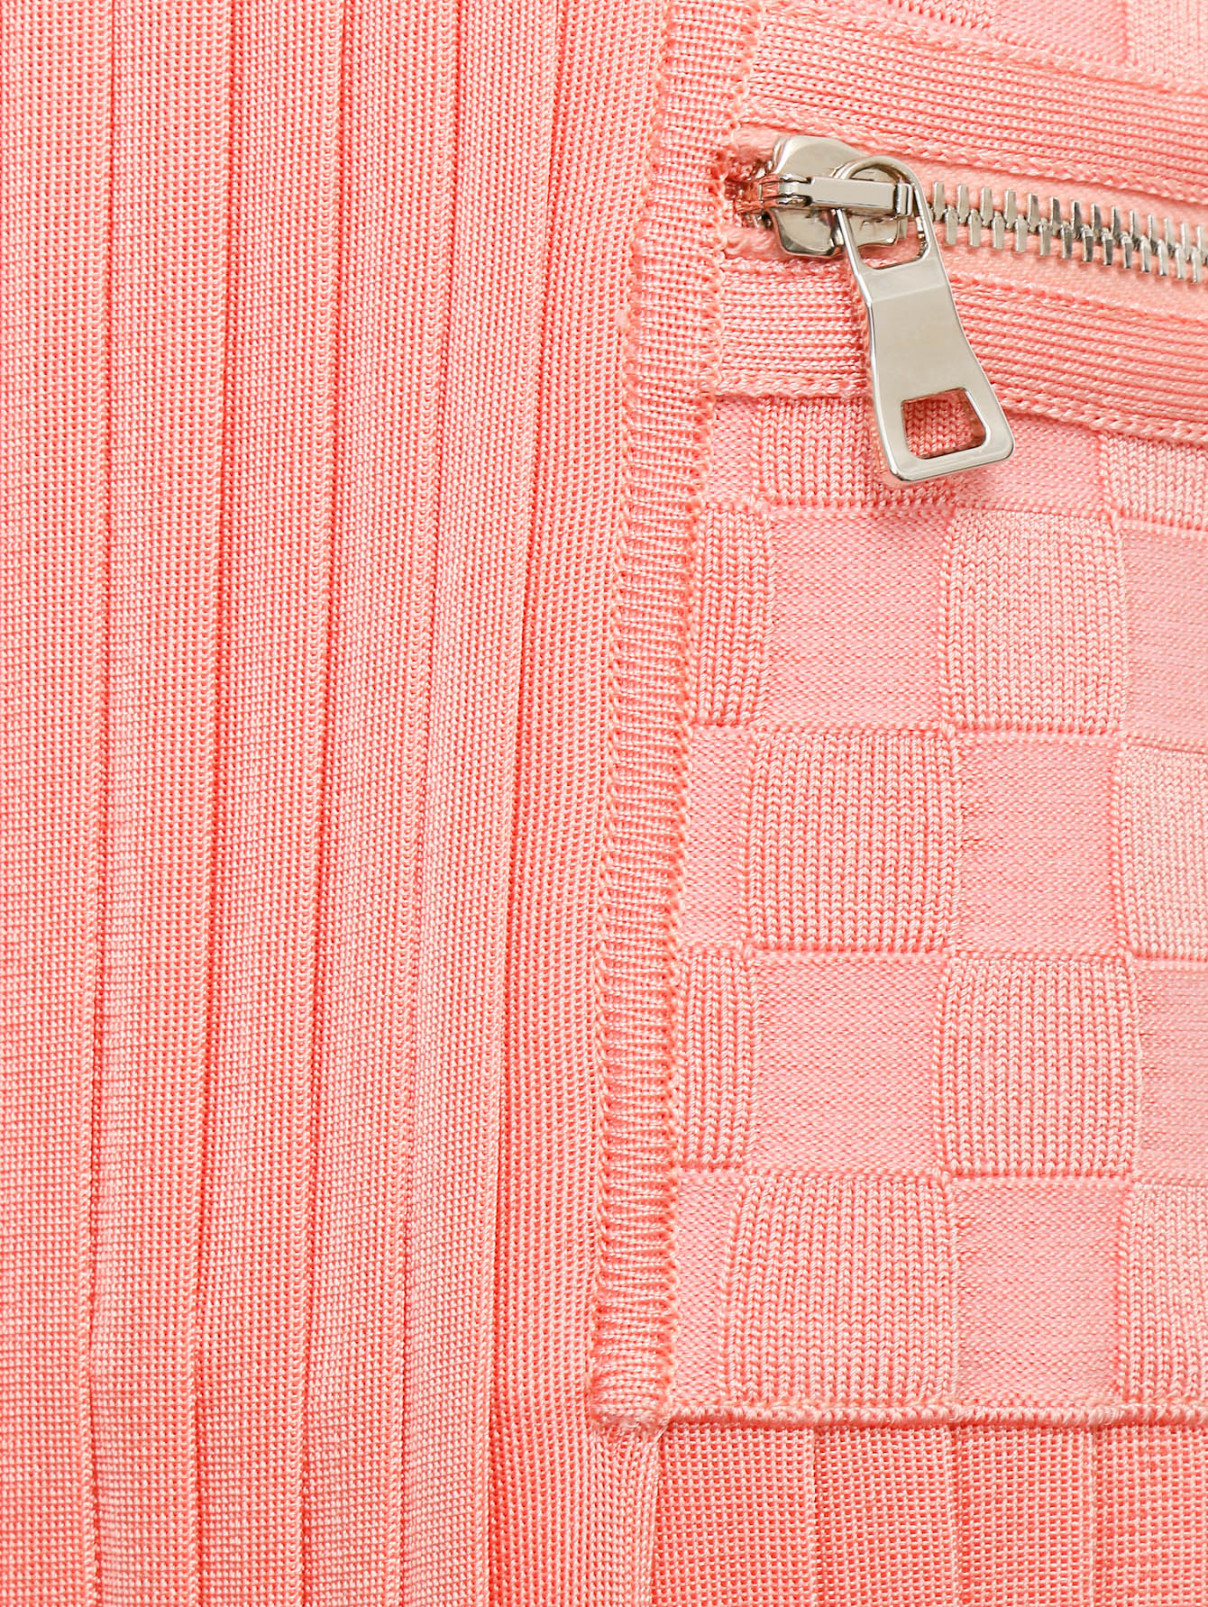 Юбка-макси с разрезом BALMAIN  –  Деталь  – Цвет:  Розовый